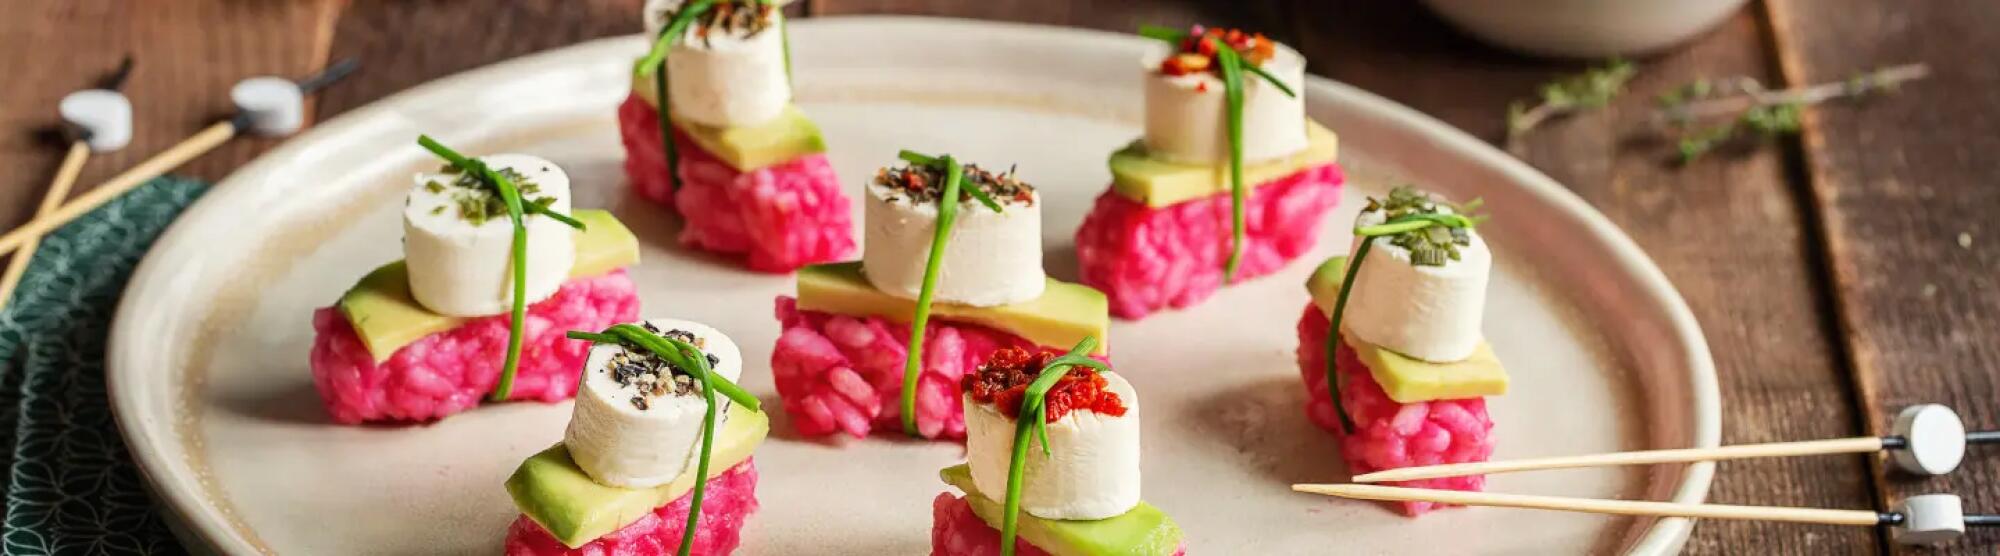 Recette : Sushi de betterave, avocat et fromages apéritifs aux saveurs provençales